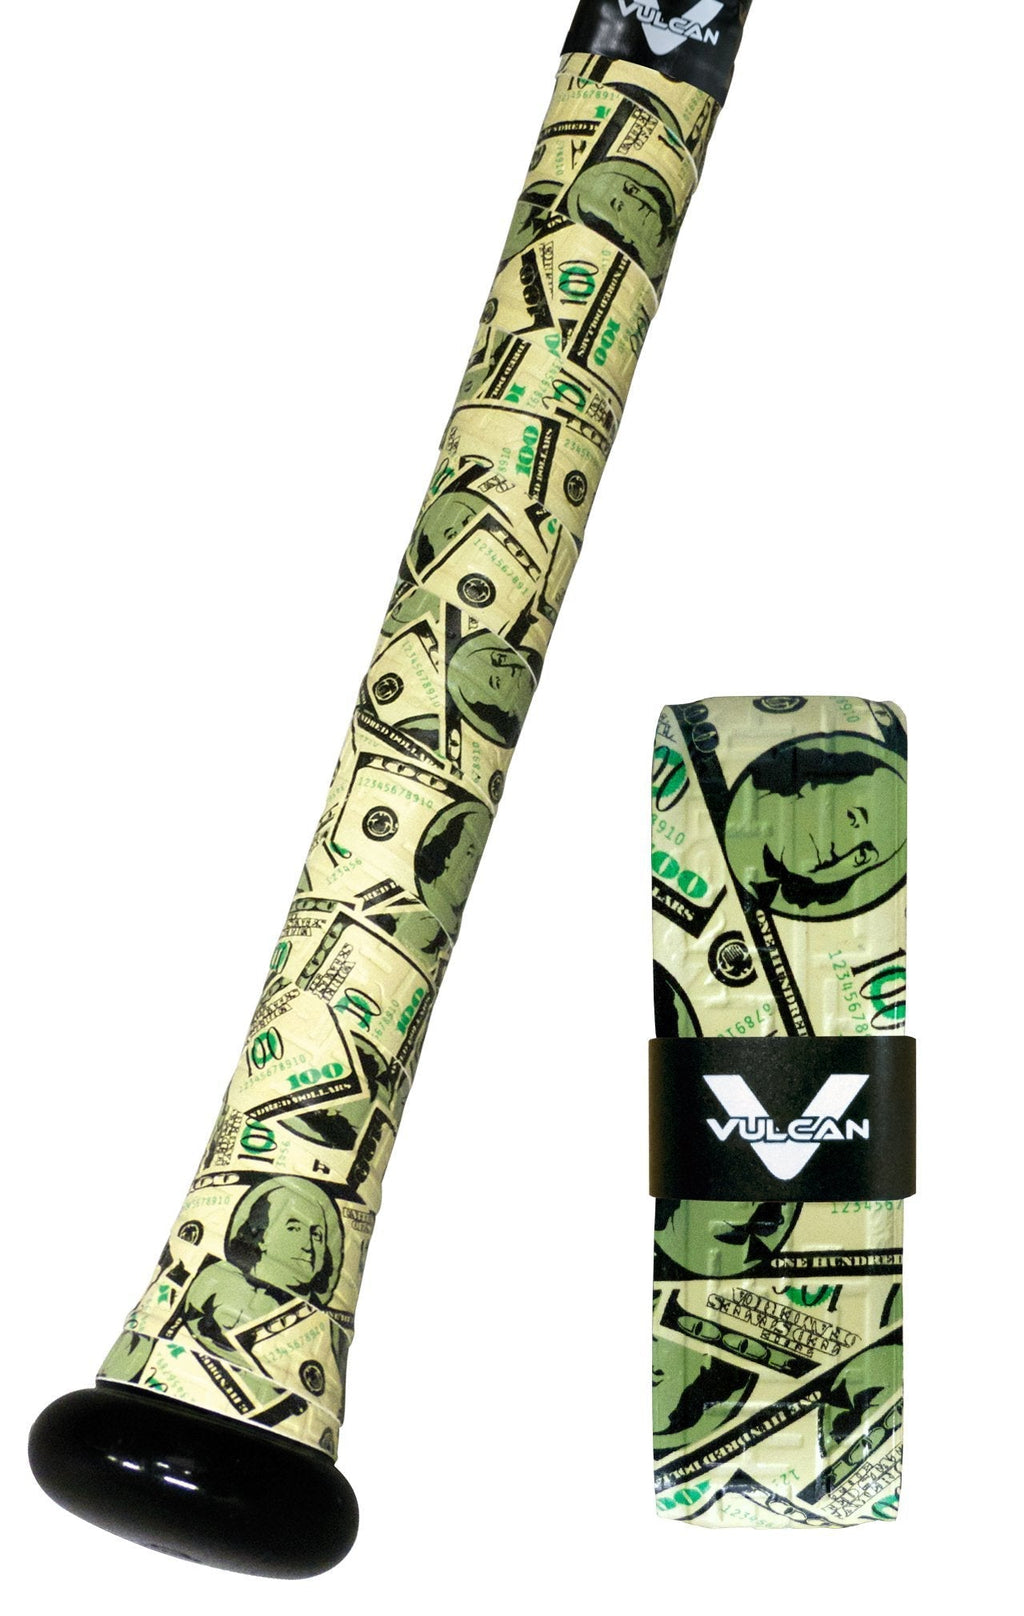 [AUSTRALIA] - Vulcan Bat Grip, Vulcan 1.75mm Bat Grip, Money 